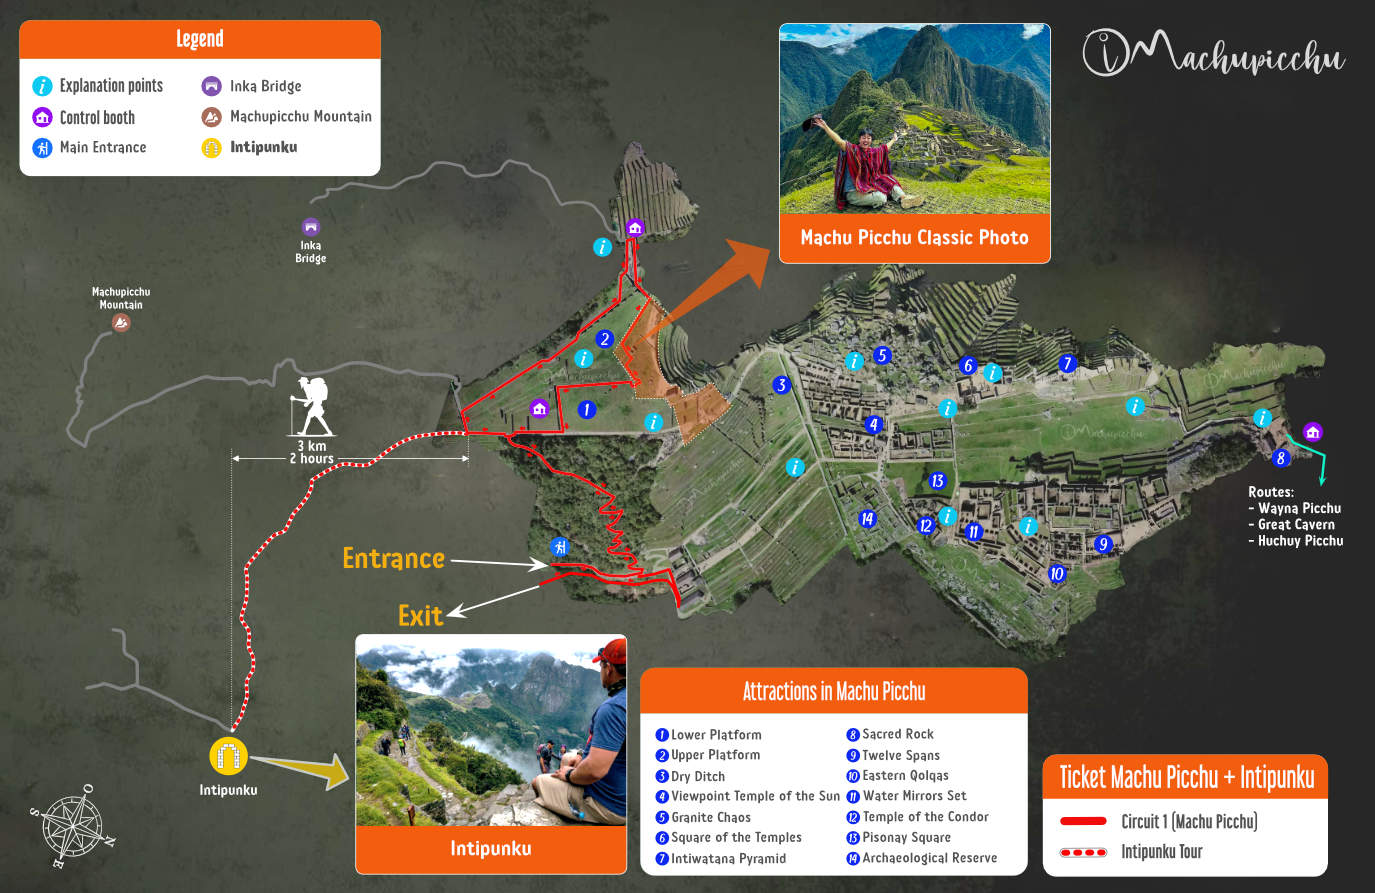 Ticket Map of Machu Picchu + Inti Punku